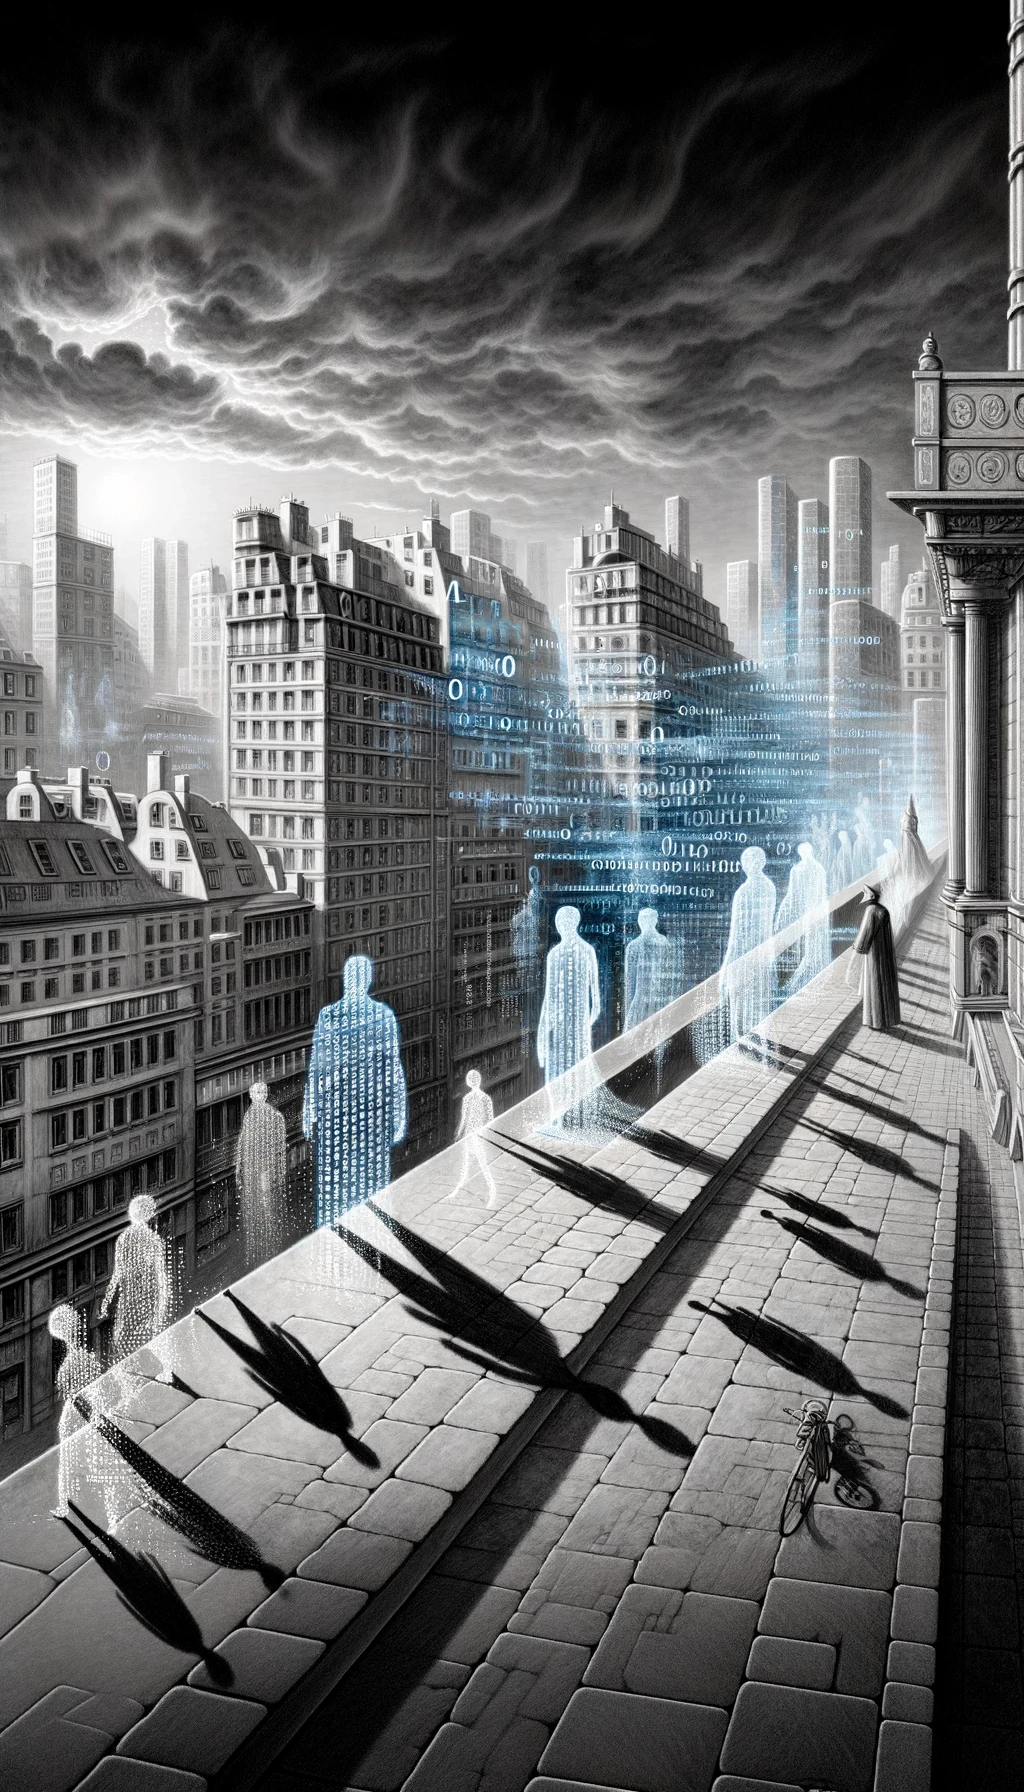 Ein Bild, das Wolke, Stadt, Gebäude, Schwarzweiß enthält.

Automatisch generierte Beschreibung